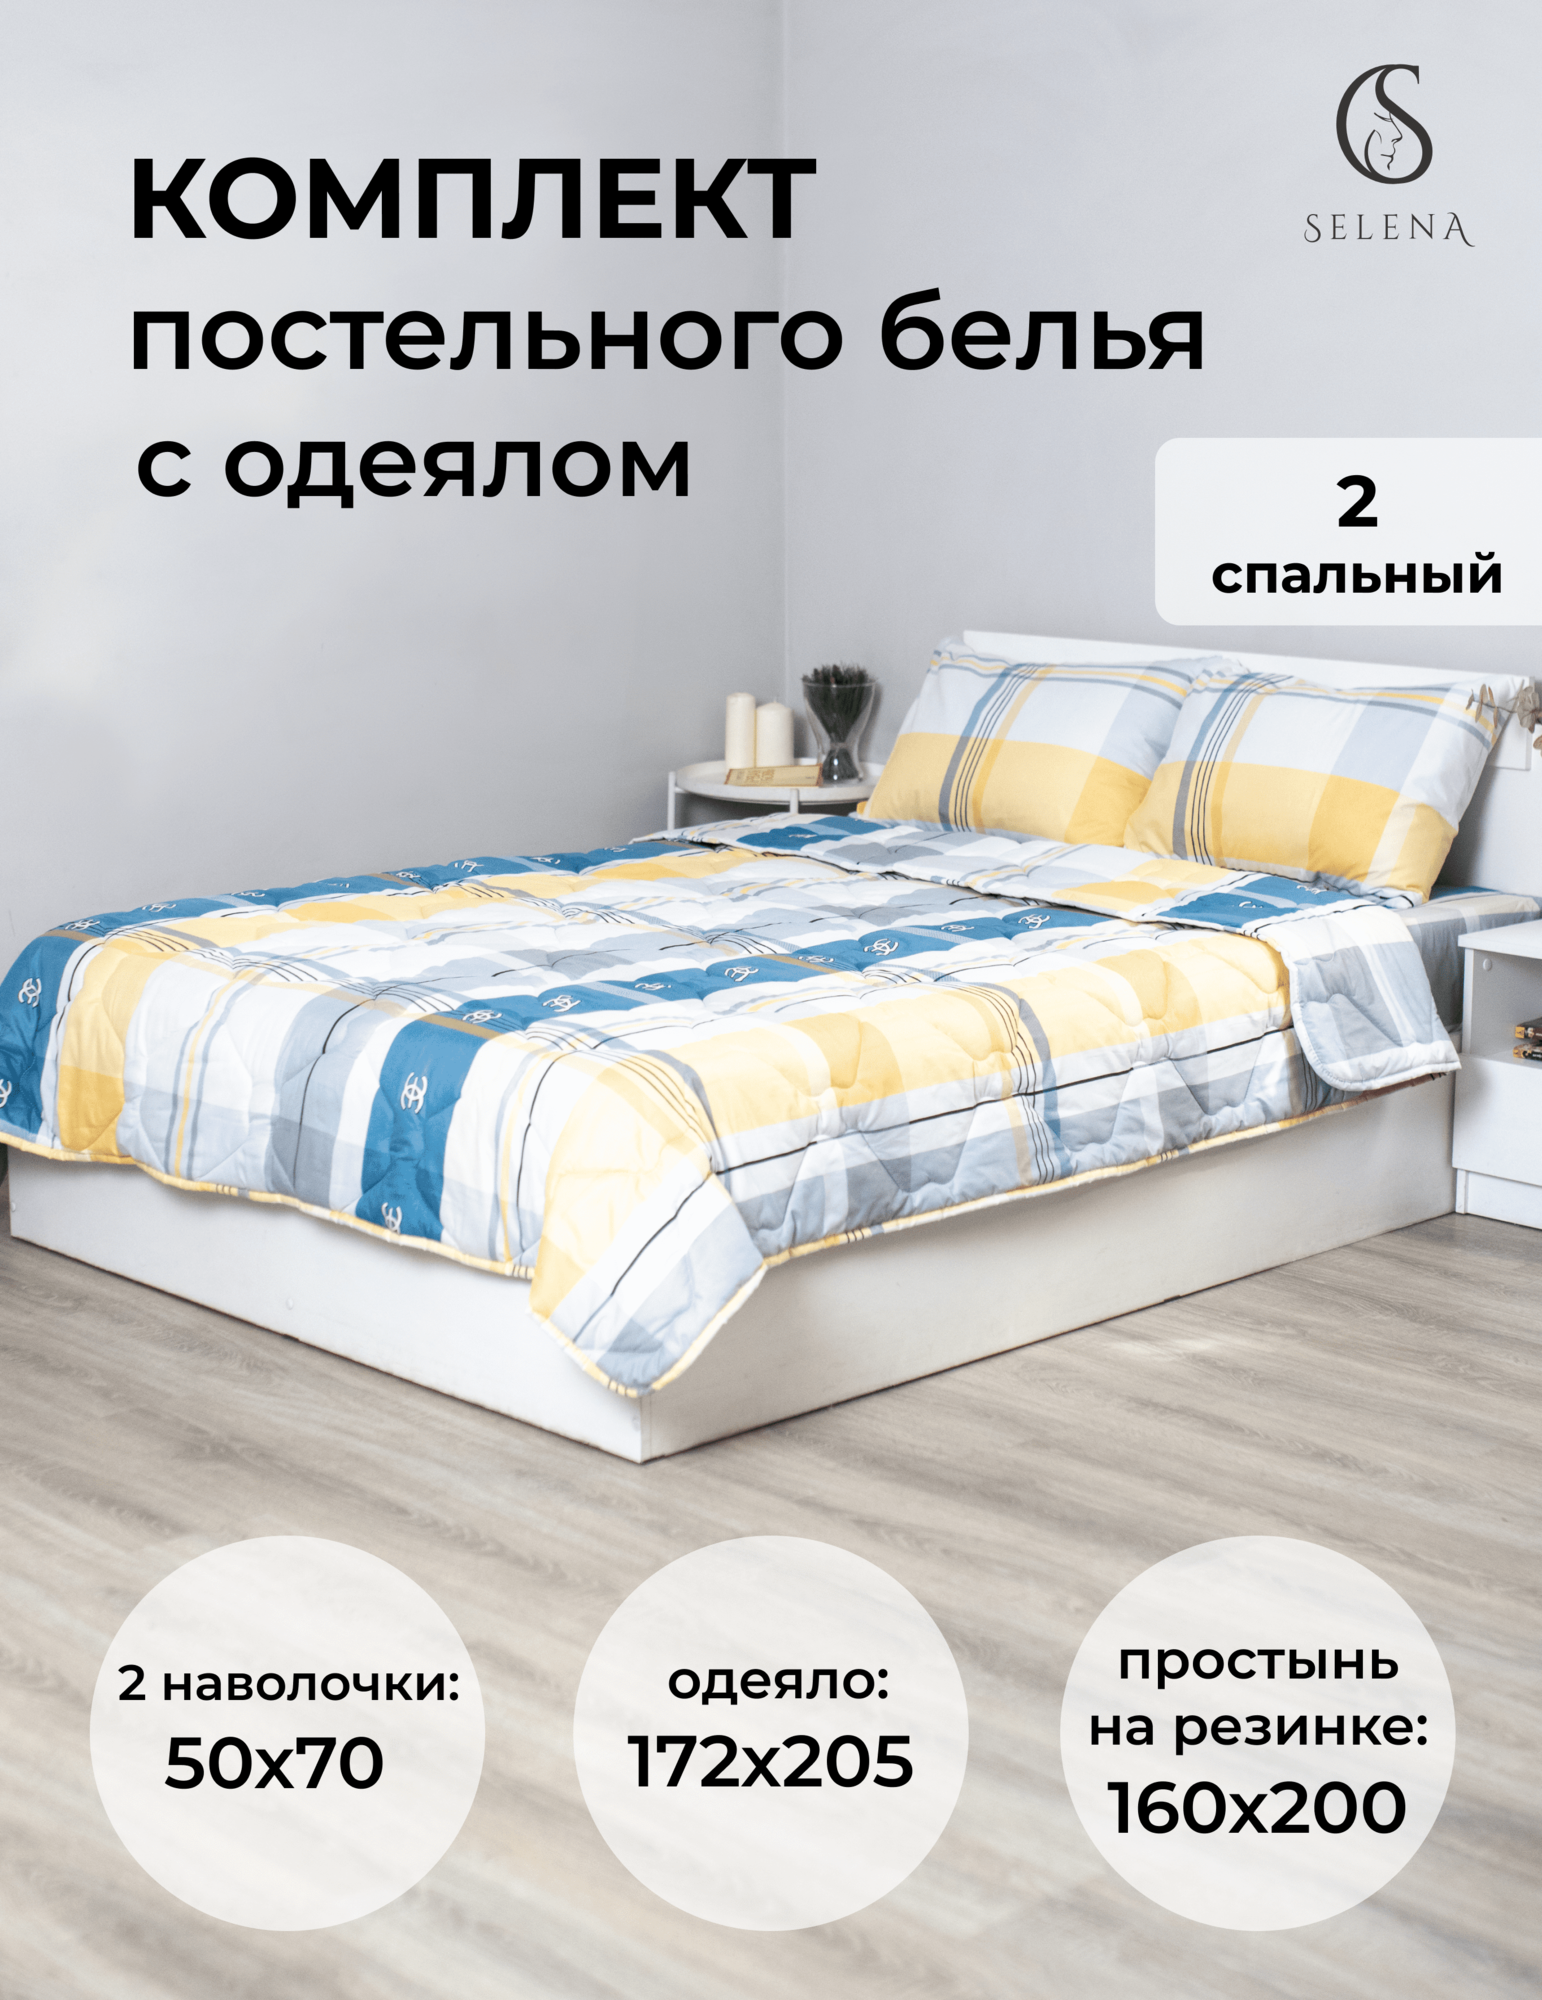 Комплект постельного белья "SELENA" Фенек 2-сп, с одеялом, 172х205 и наволочками 50х70